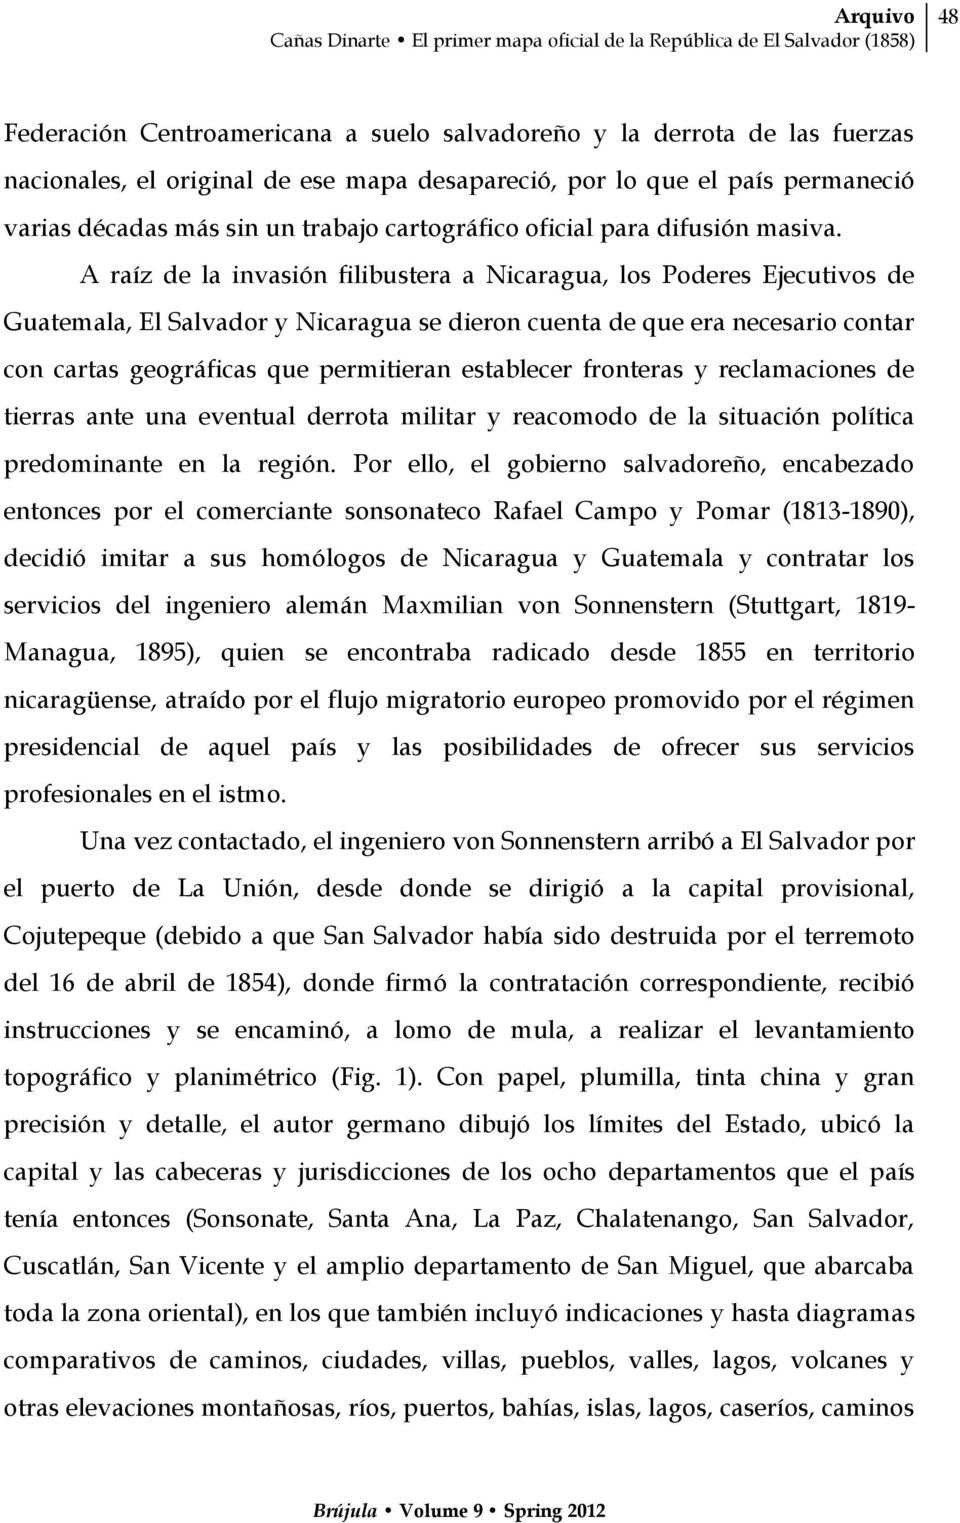 A raíz de la invasión filibustera a Nicaragua, los Poderes Ejecutivos de Guatemala, El Salvador y Nicaragua se dieron cuenta de que era necesario contar con cartas geográficas que permitieran